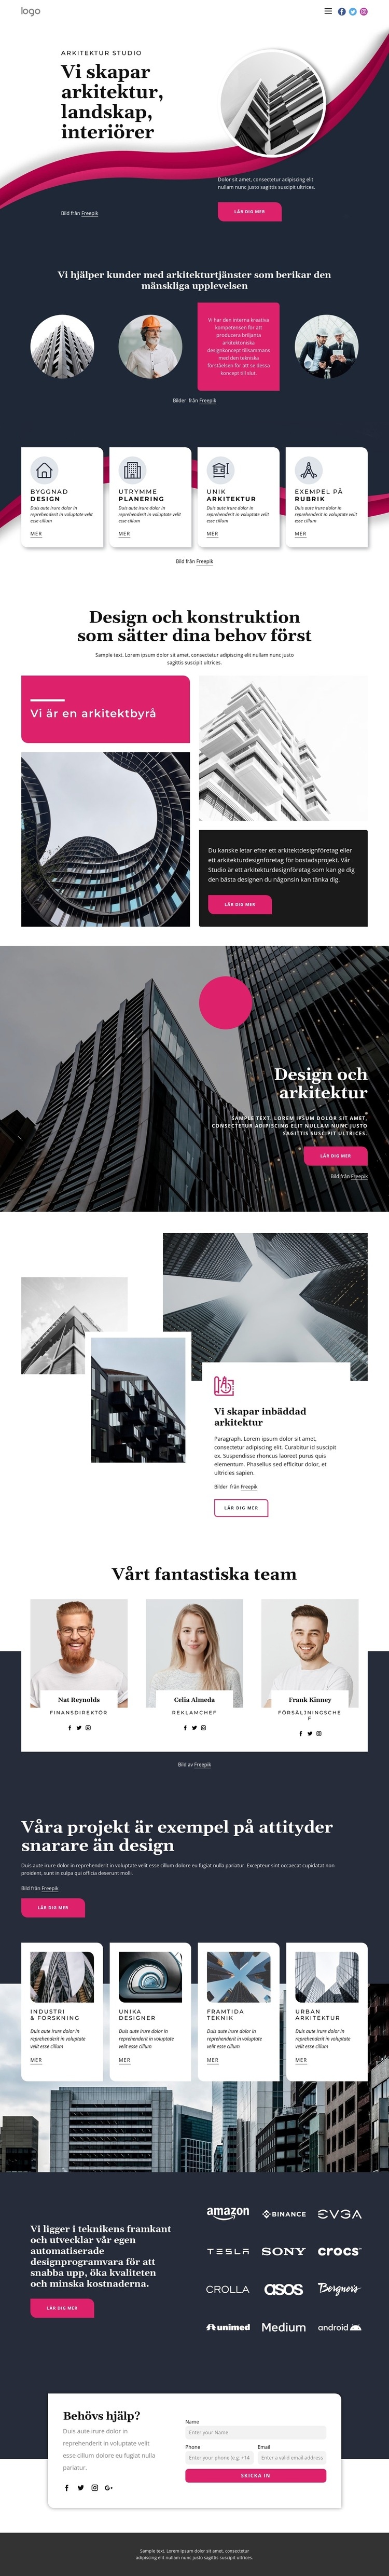 Vi skapar fantastisk arkitektur Webbplats mall